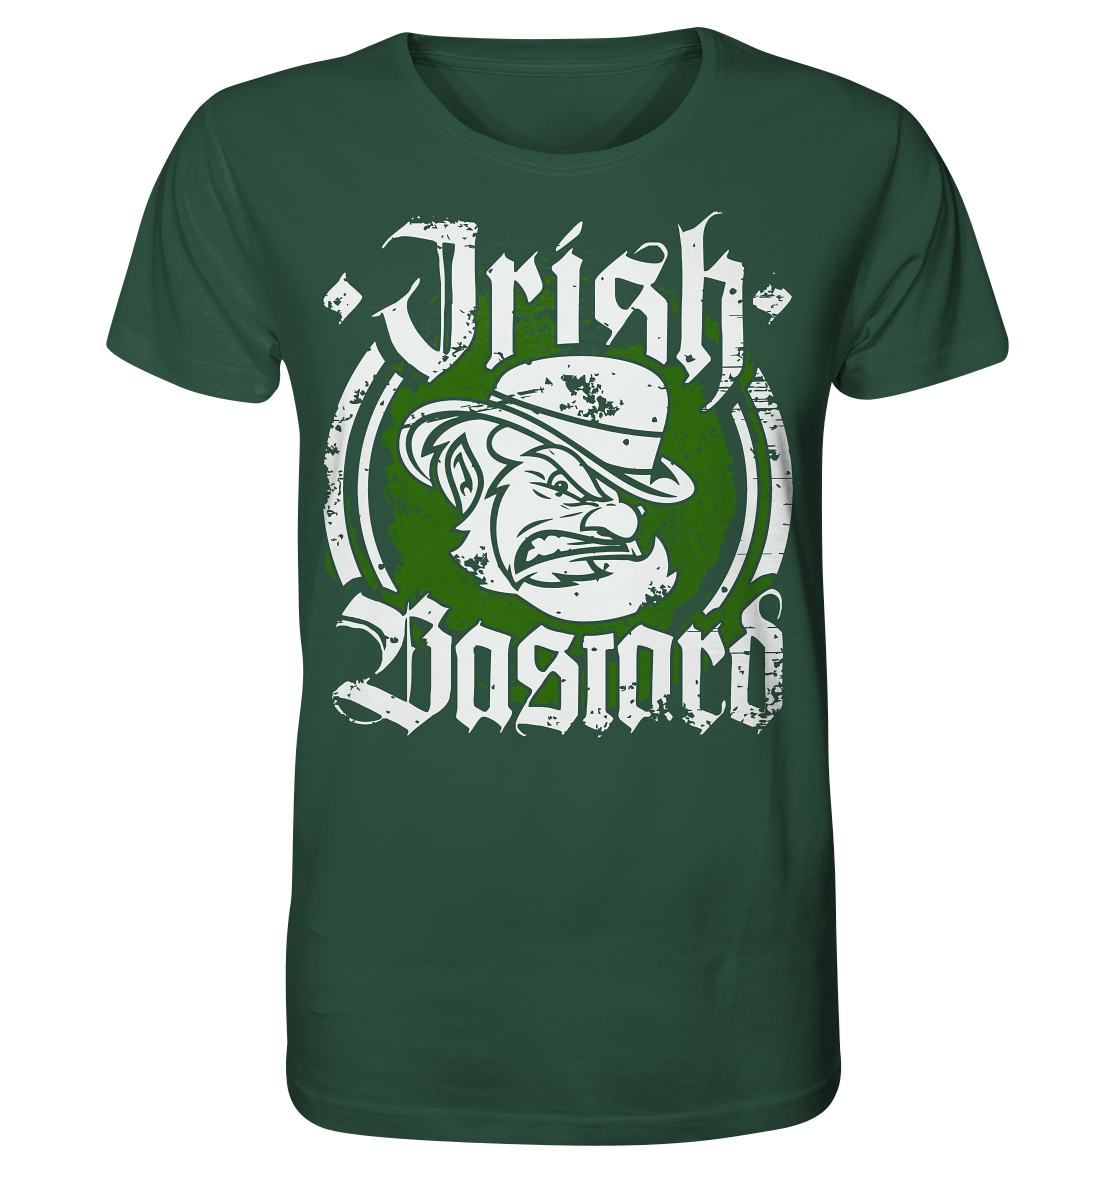 Irish Bastard - Organic Shirt